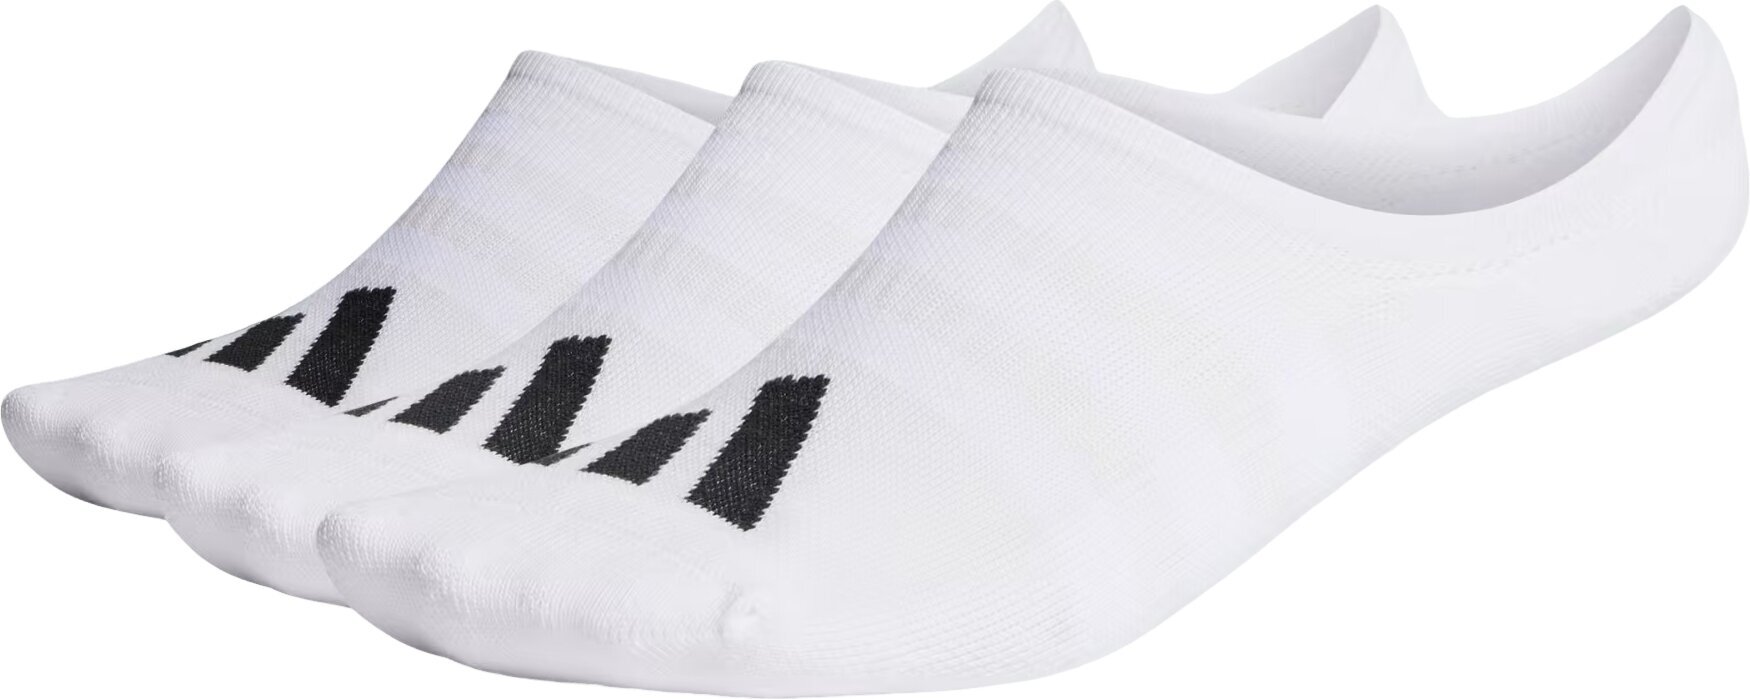 Skarpety Adidas No Show Golf Socks 3-Pairs Skarpety White 48-51